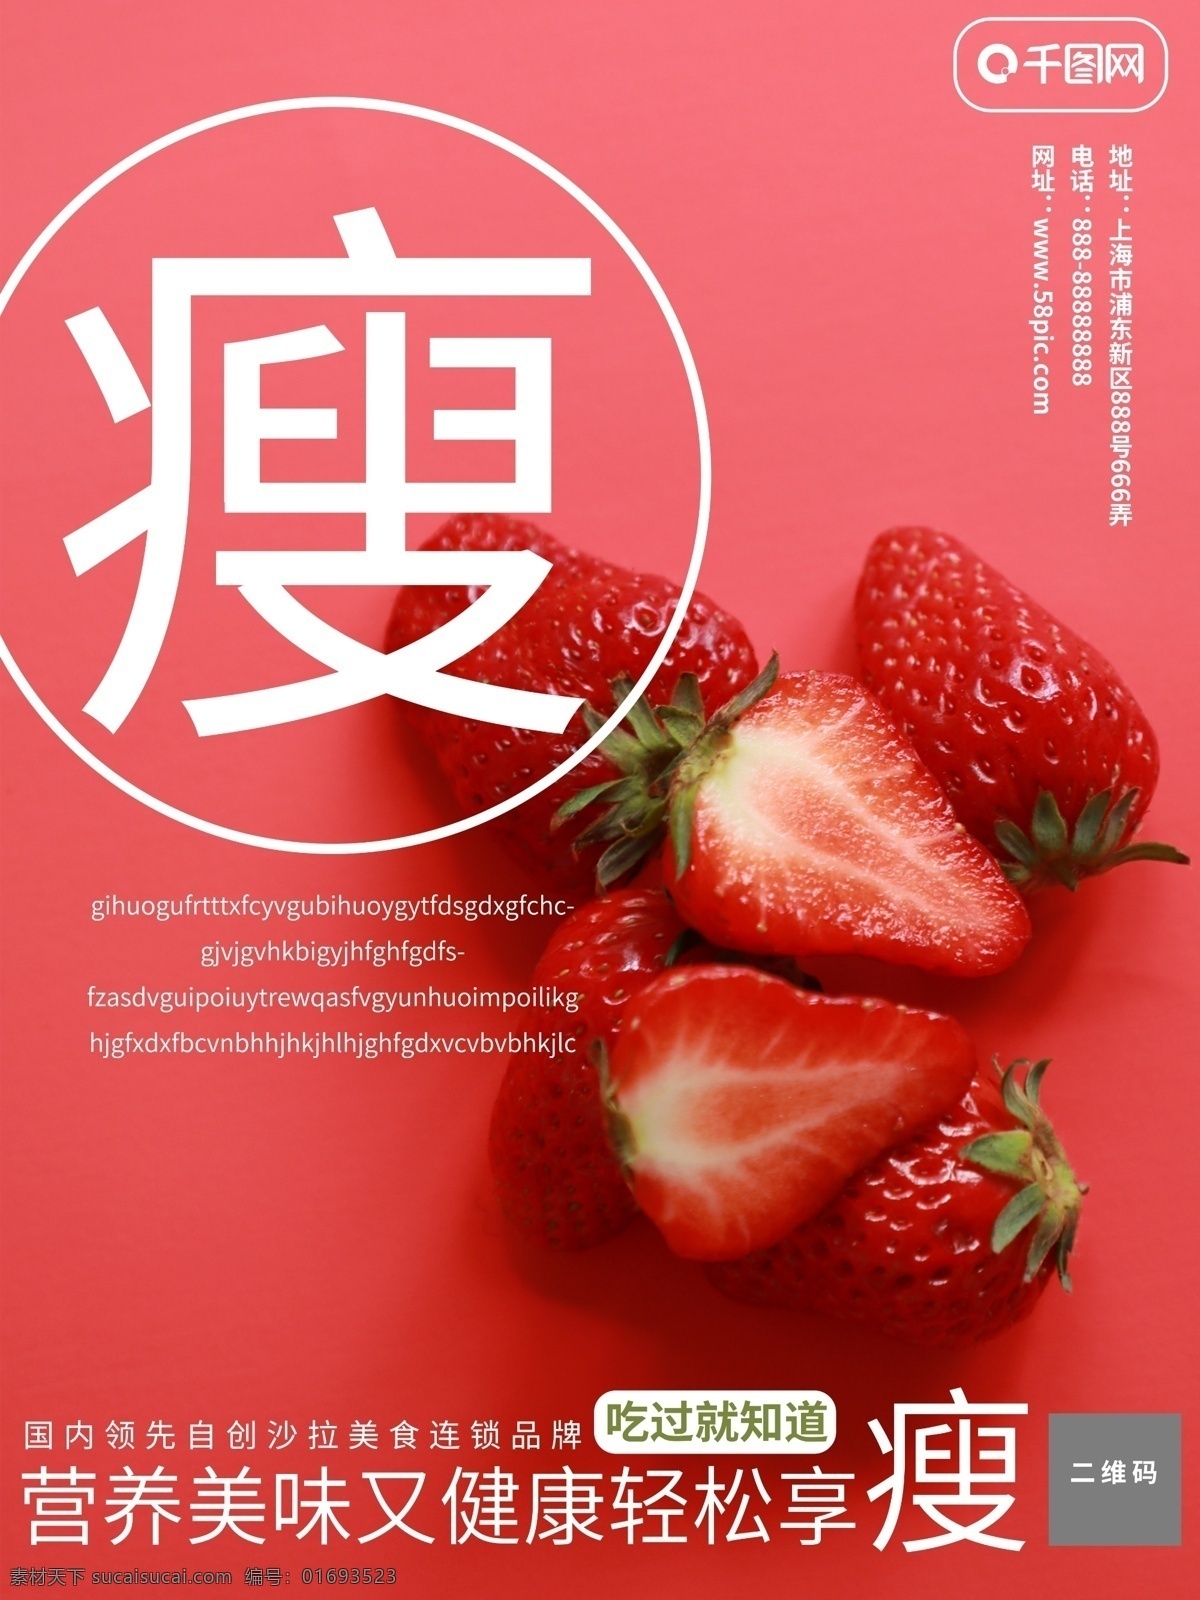 小清 新高 端 大气 简约 蔬菜水果 沙拉 美食 海报 草莓 小清新 日式 简洁 水果 蔬菜 食物 促销海报 活动海报 商业海报 红色